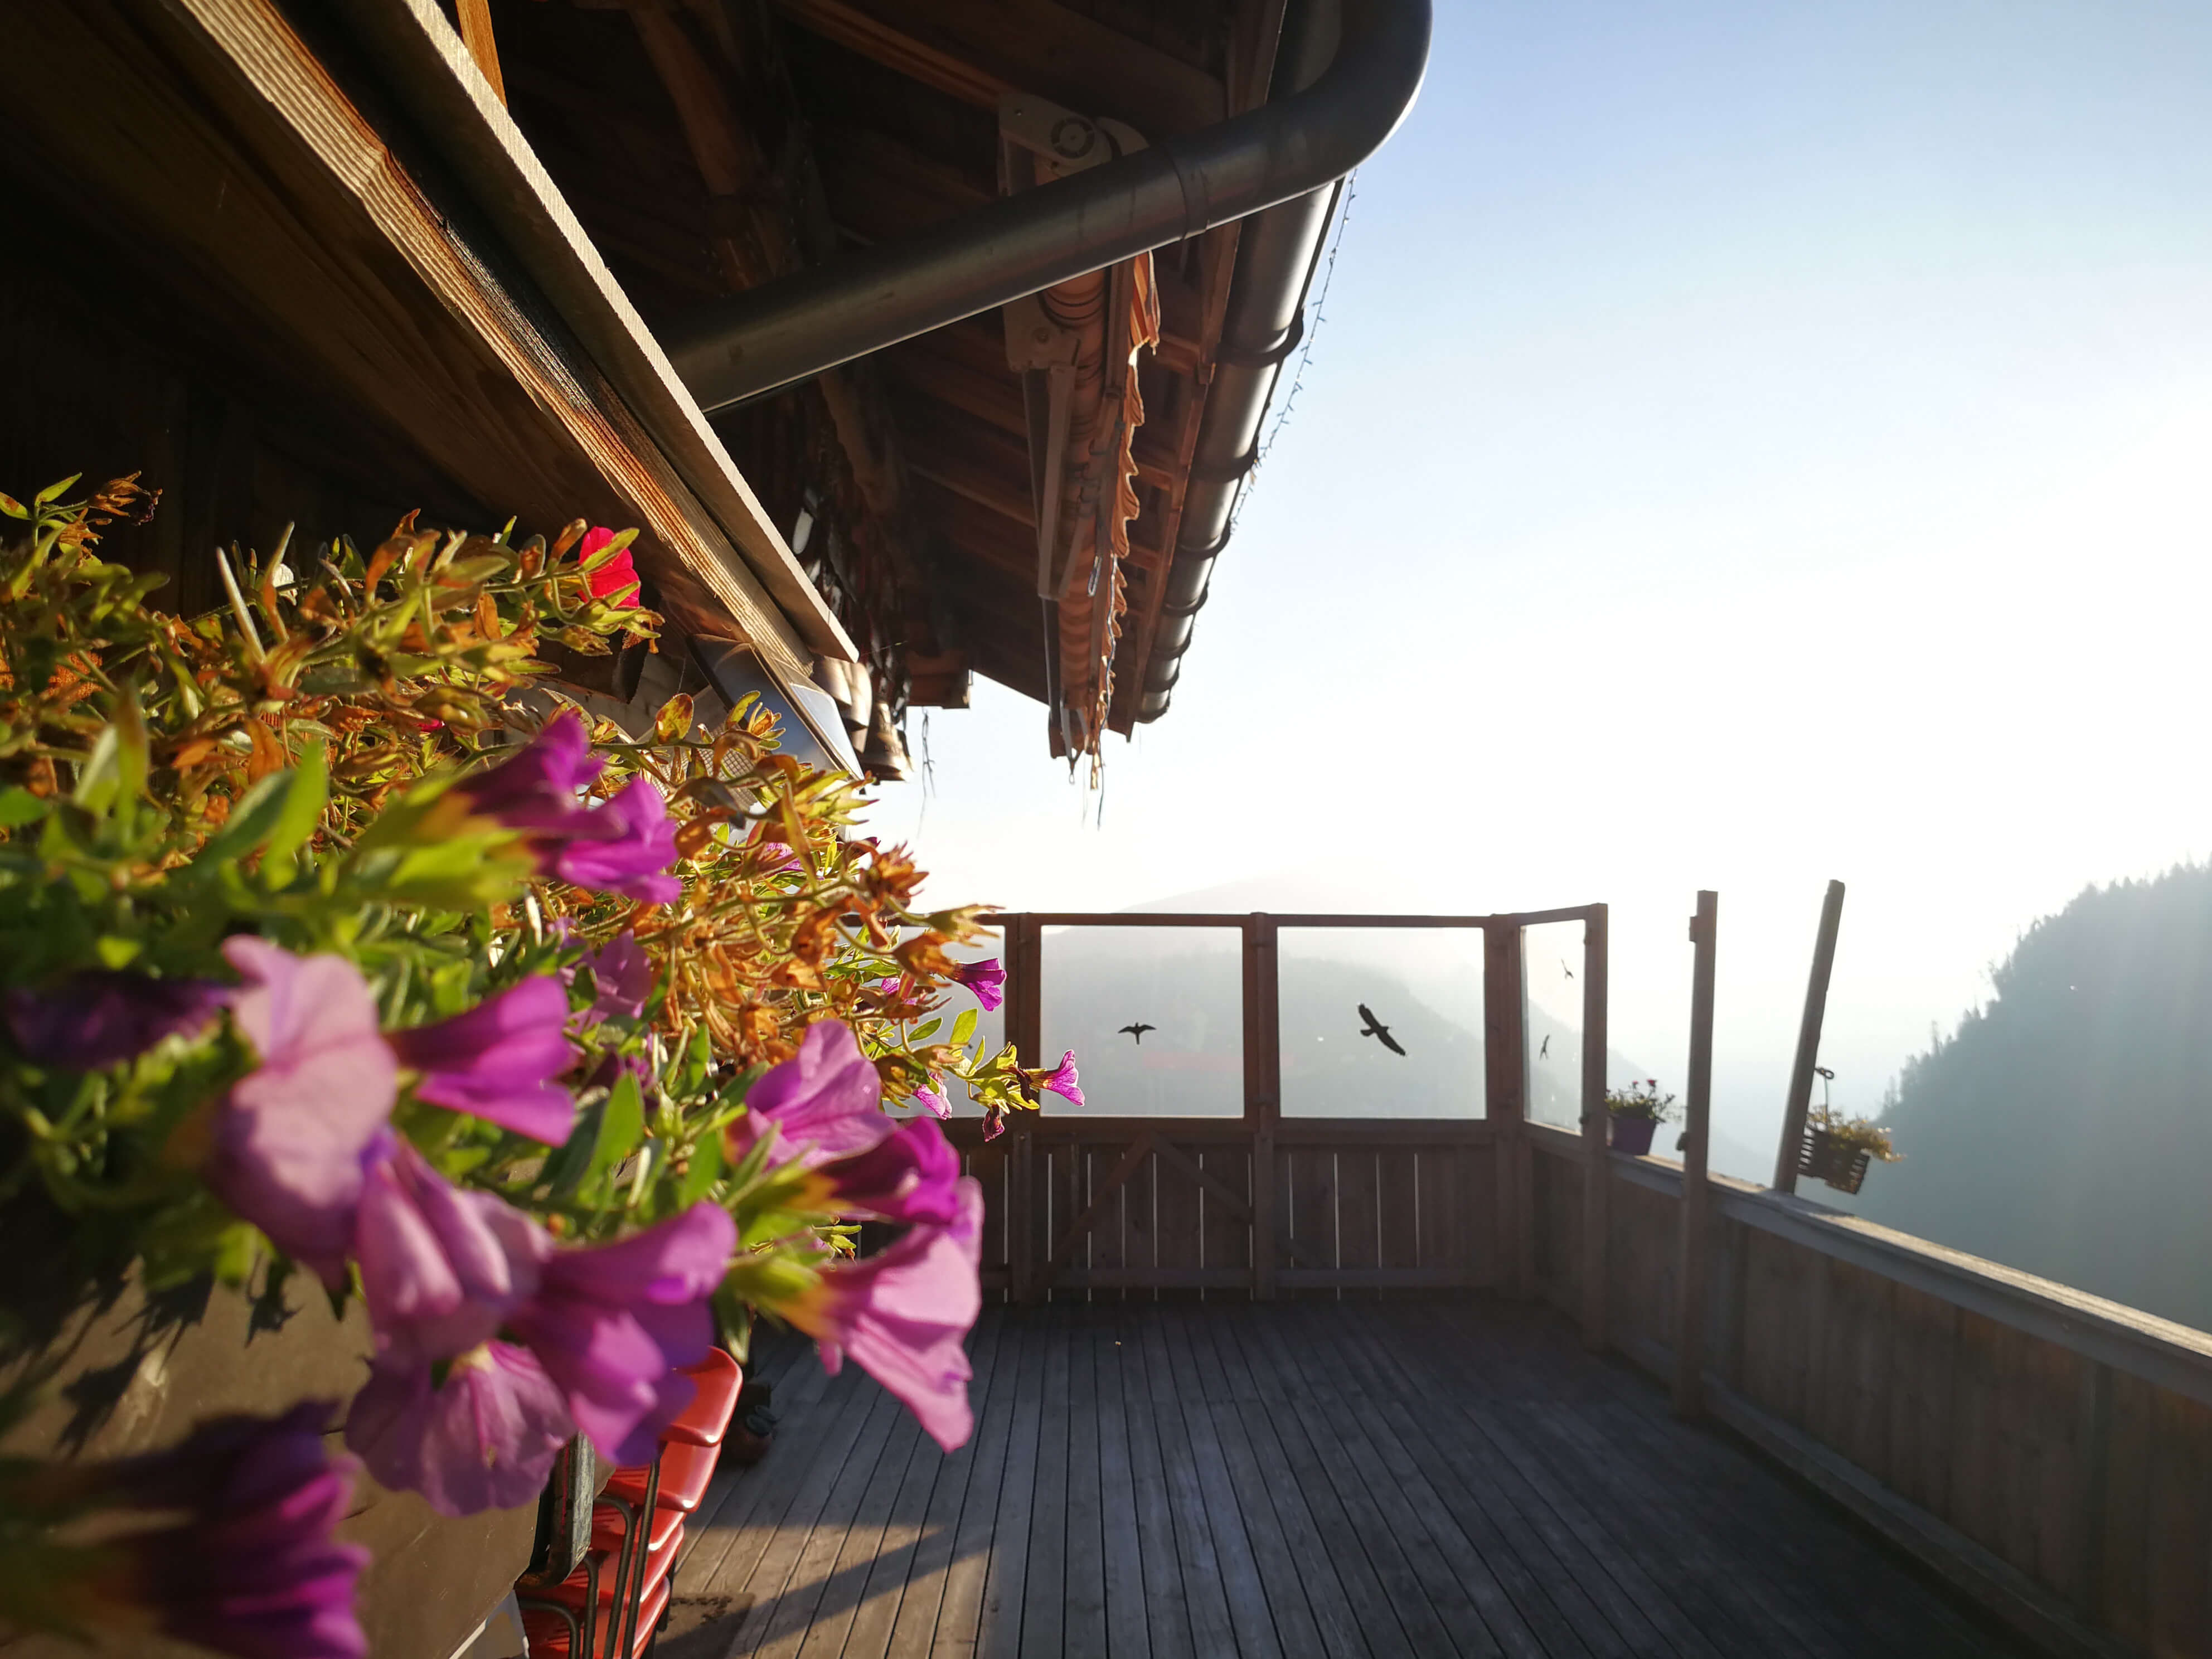 Sennhütte Menigwald Terrasse mit Blumen auf dem Balkon